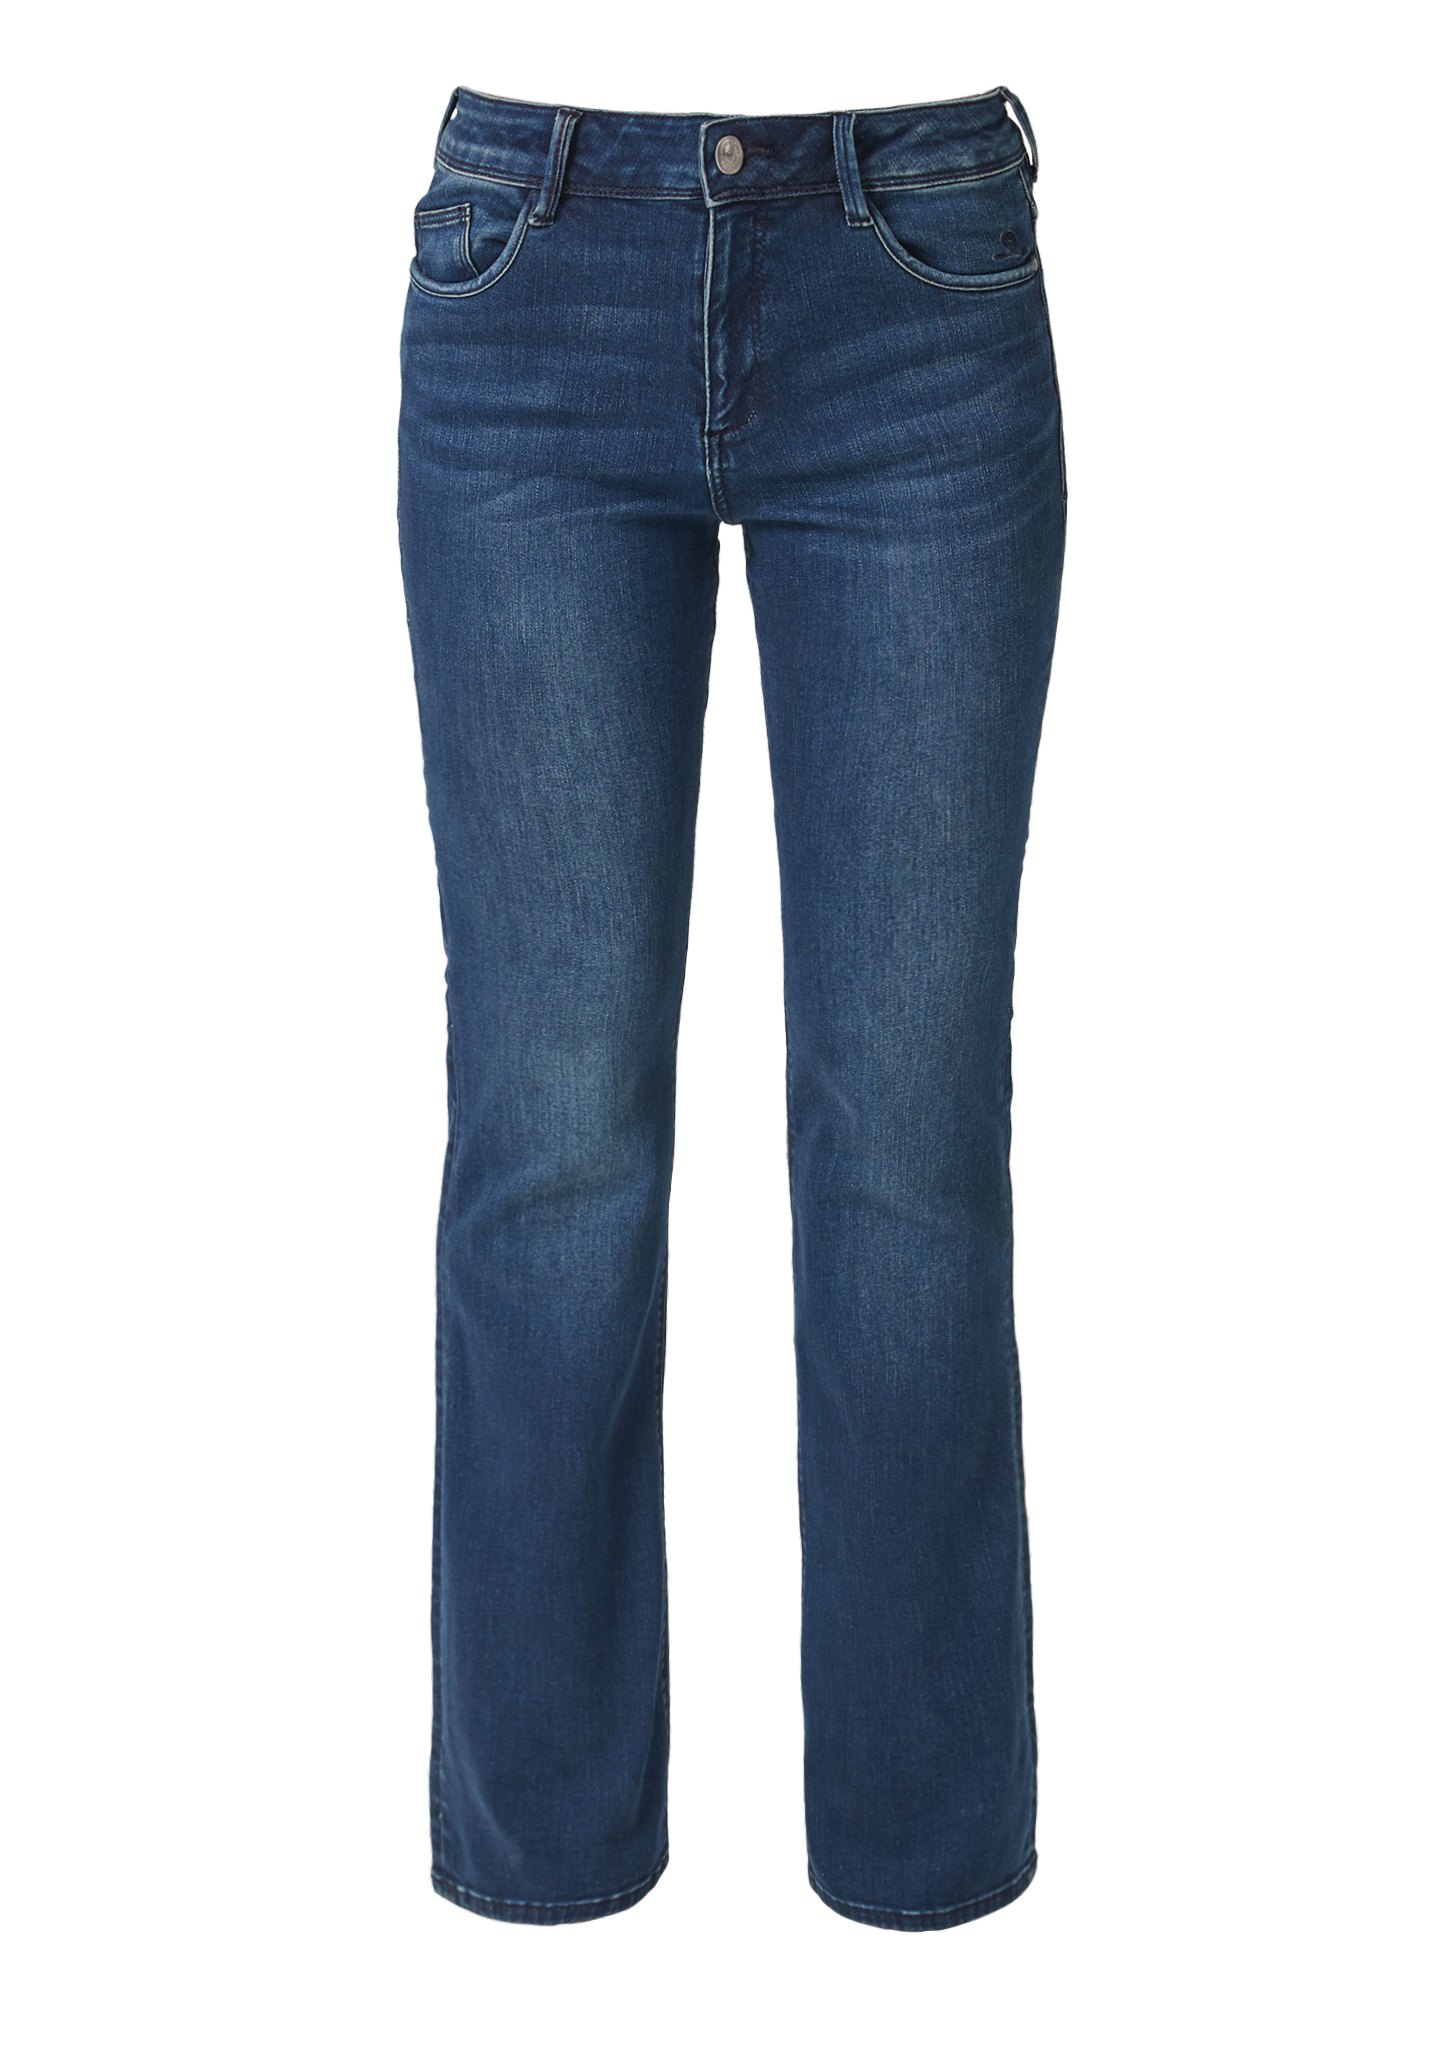 arizona jeans co shorts